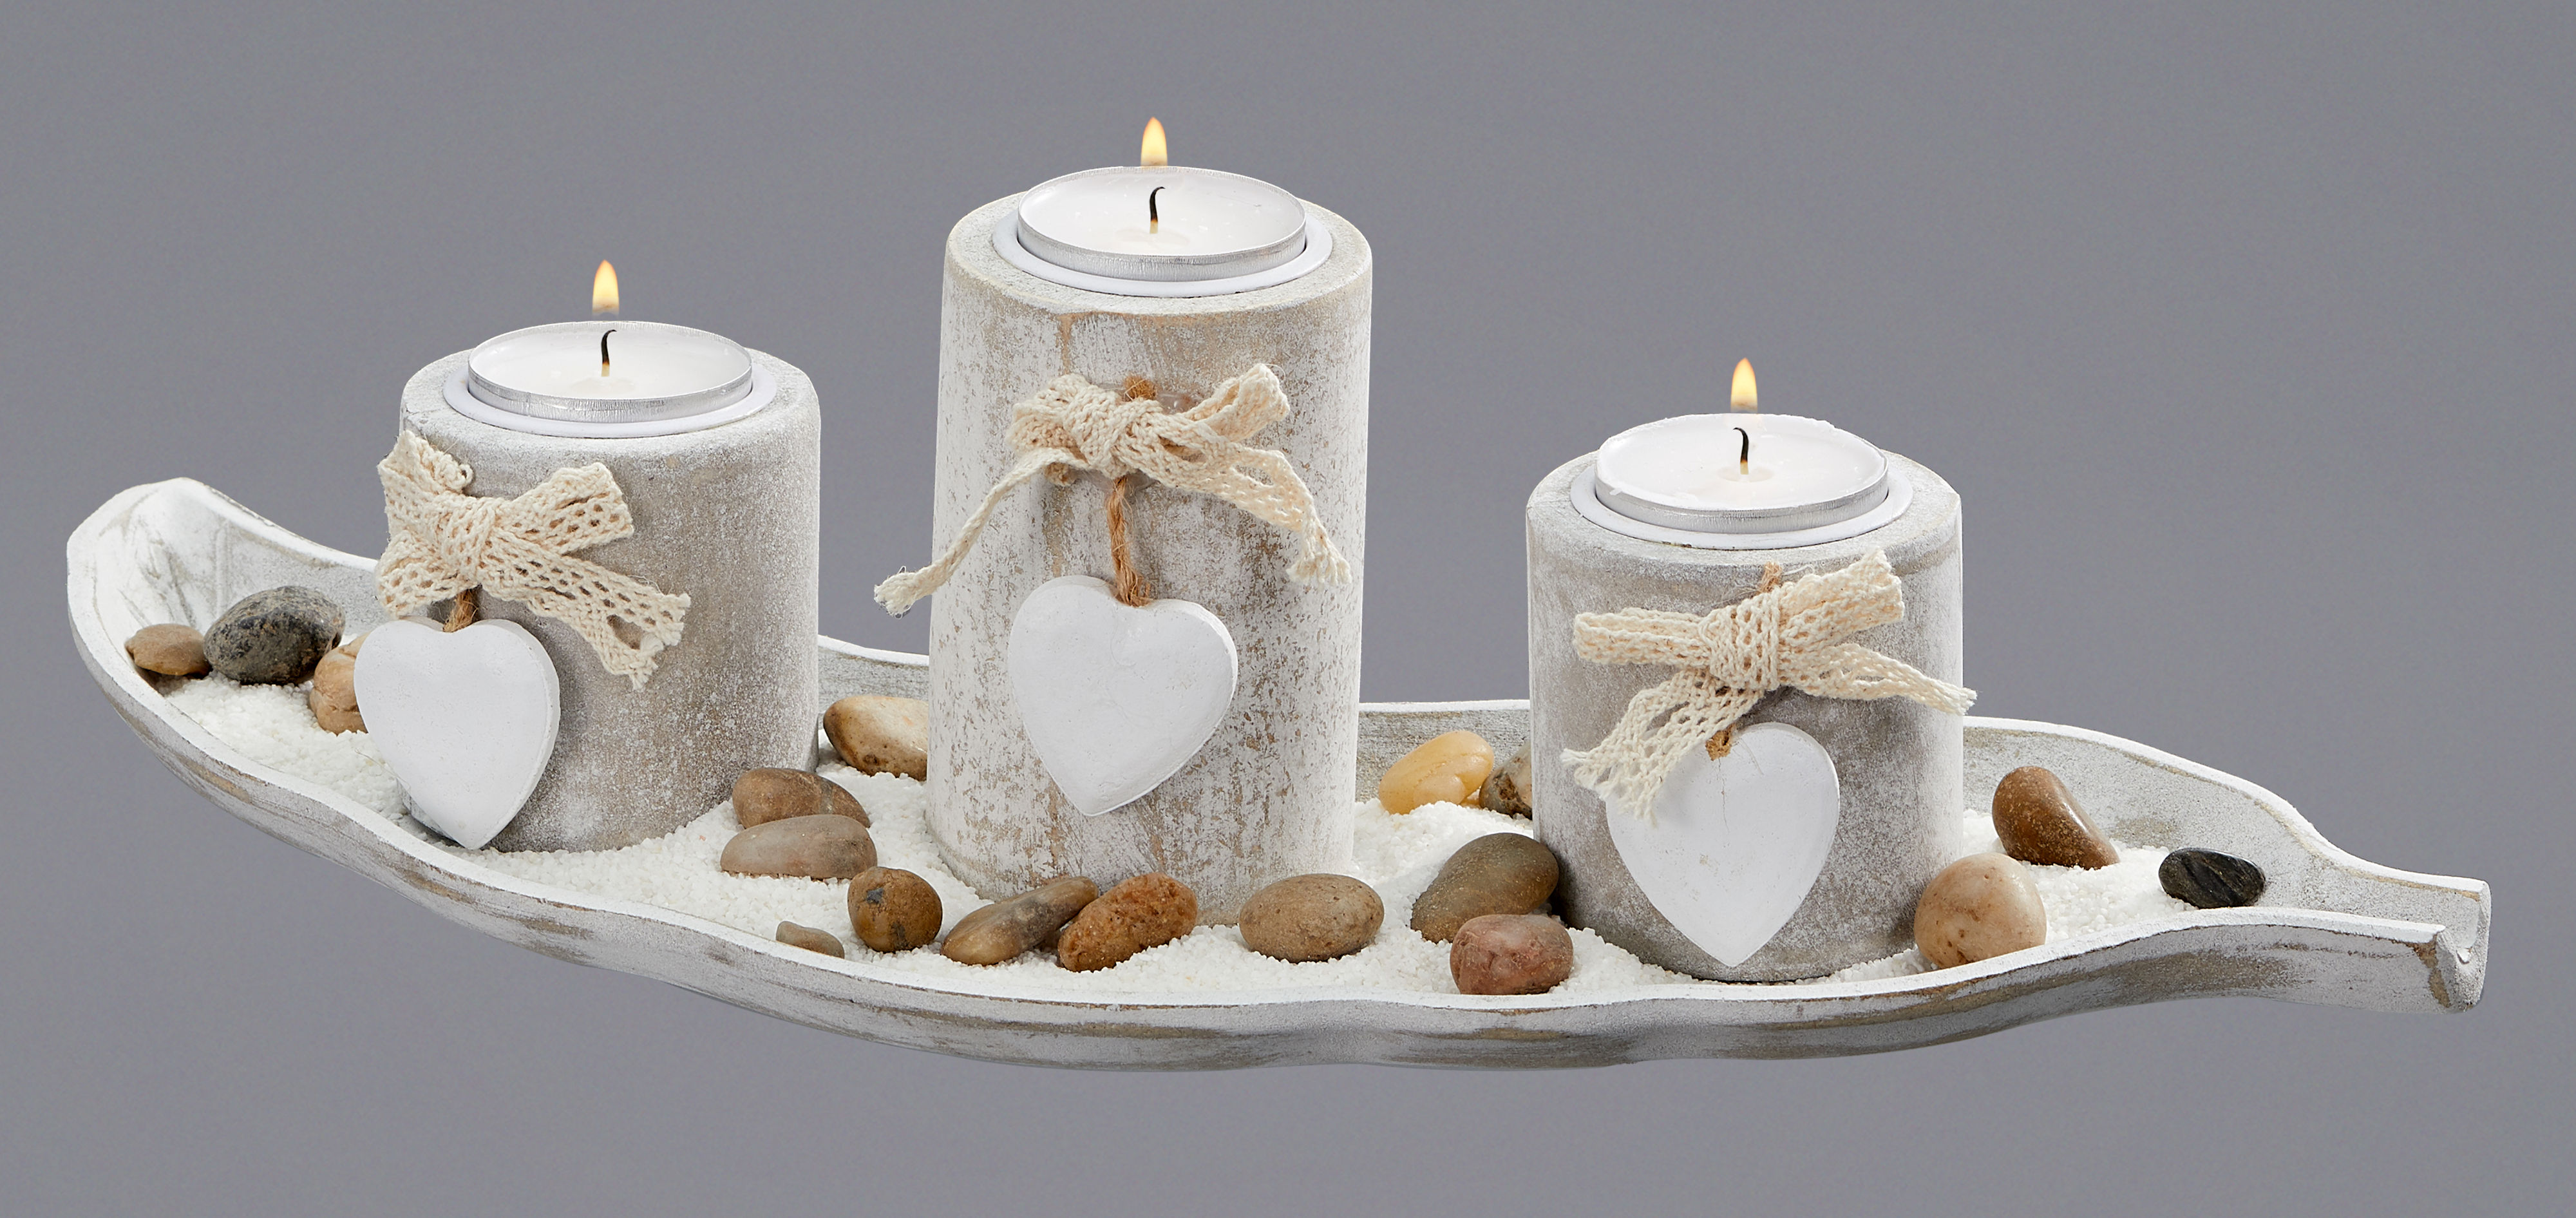 Teelichthalter Deko Set 6-teilig mit Tablett - antik weiß - Kerzen Tischdeko inklusive Steine